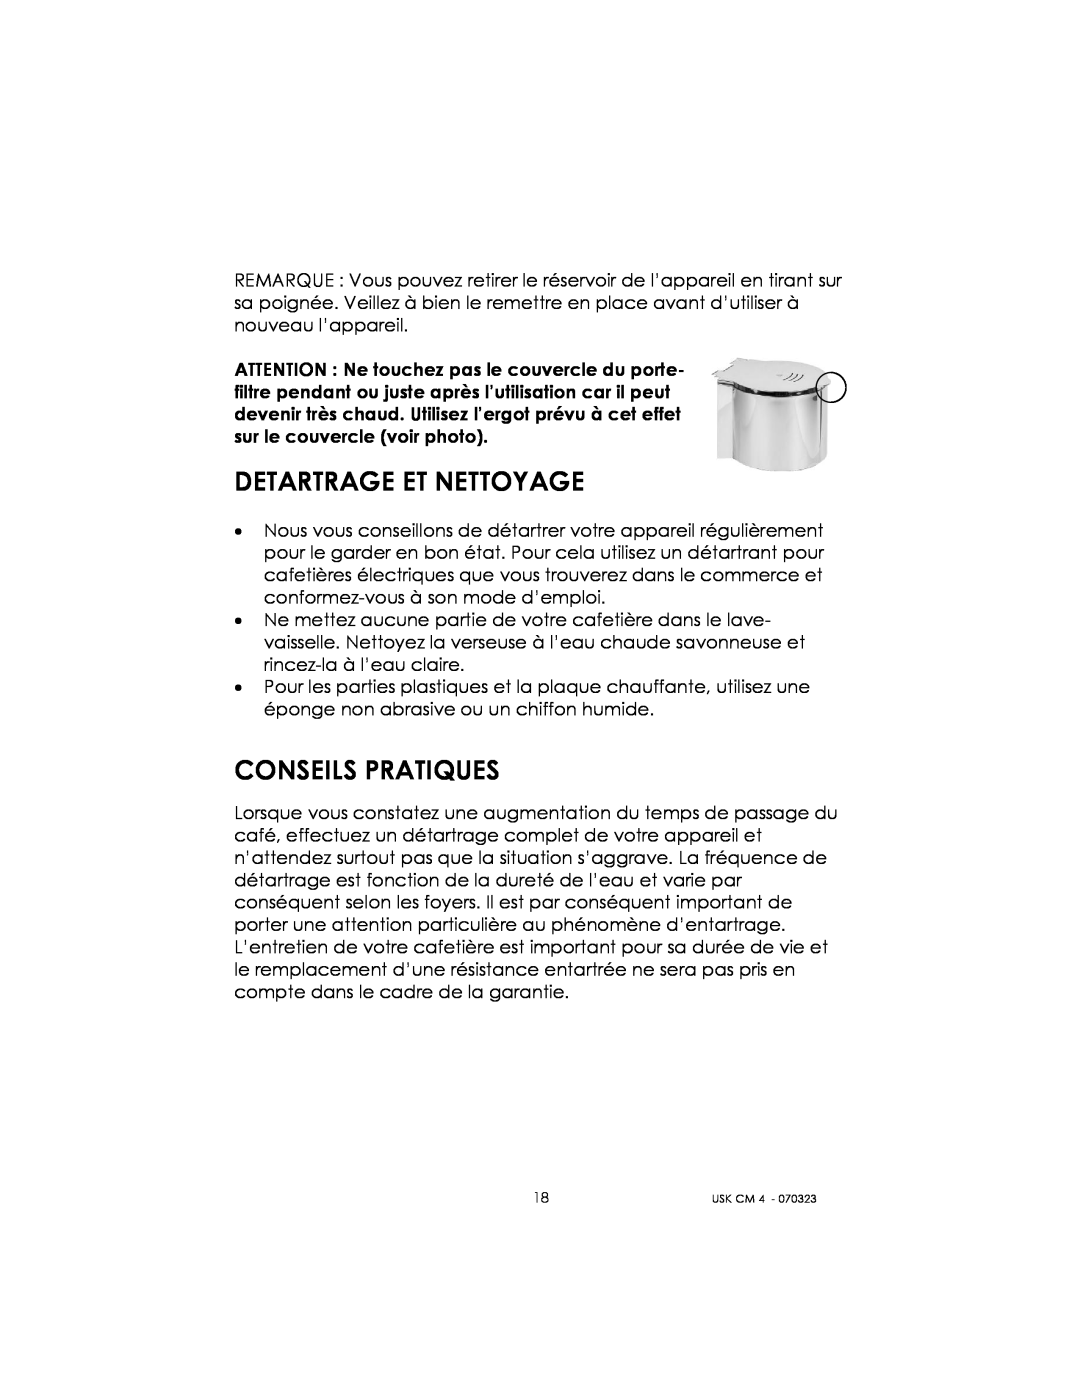 Kalorik USK CM 4 manual Detartrage Et Nettoyage, Conseils Pratiques 